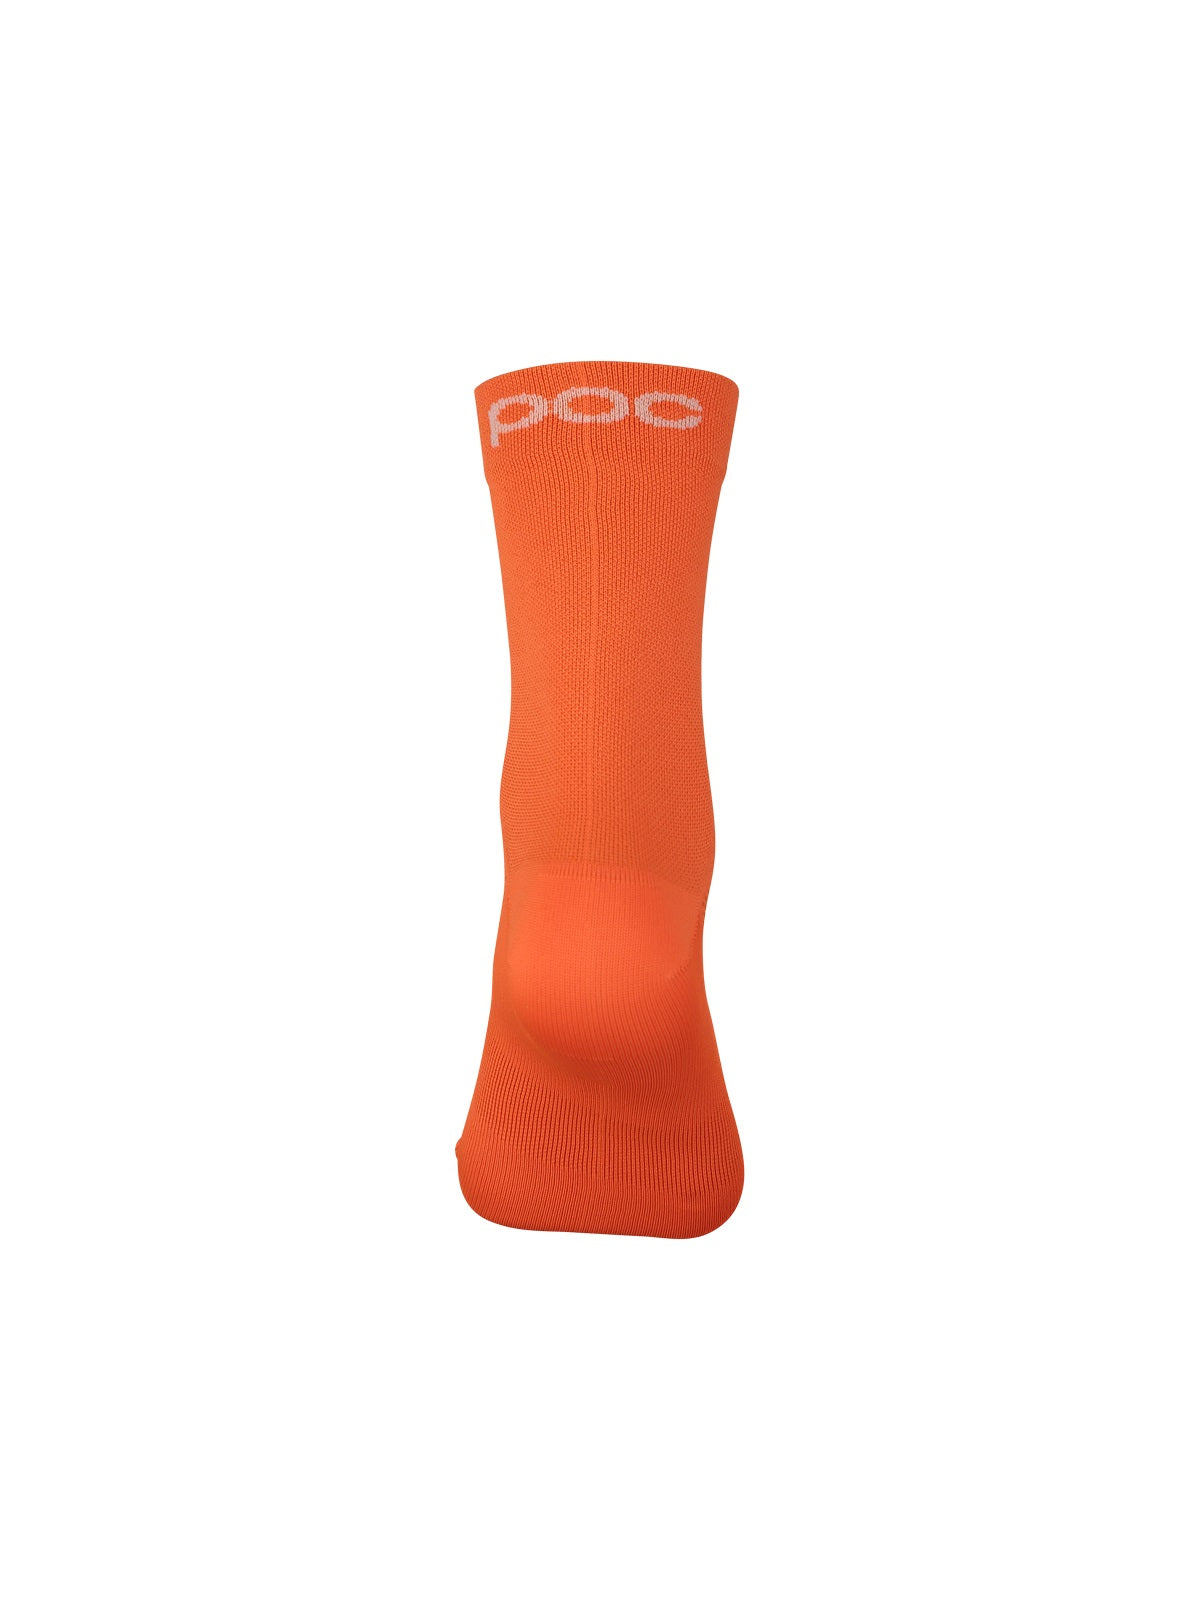 Skarpety rowerowe POC FLUO Sock - Fluo. Orange